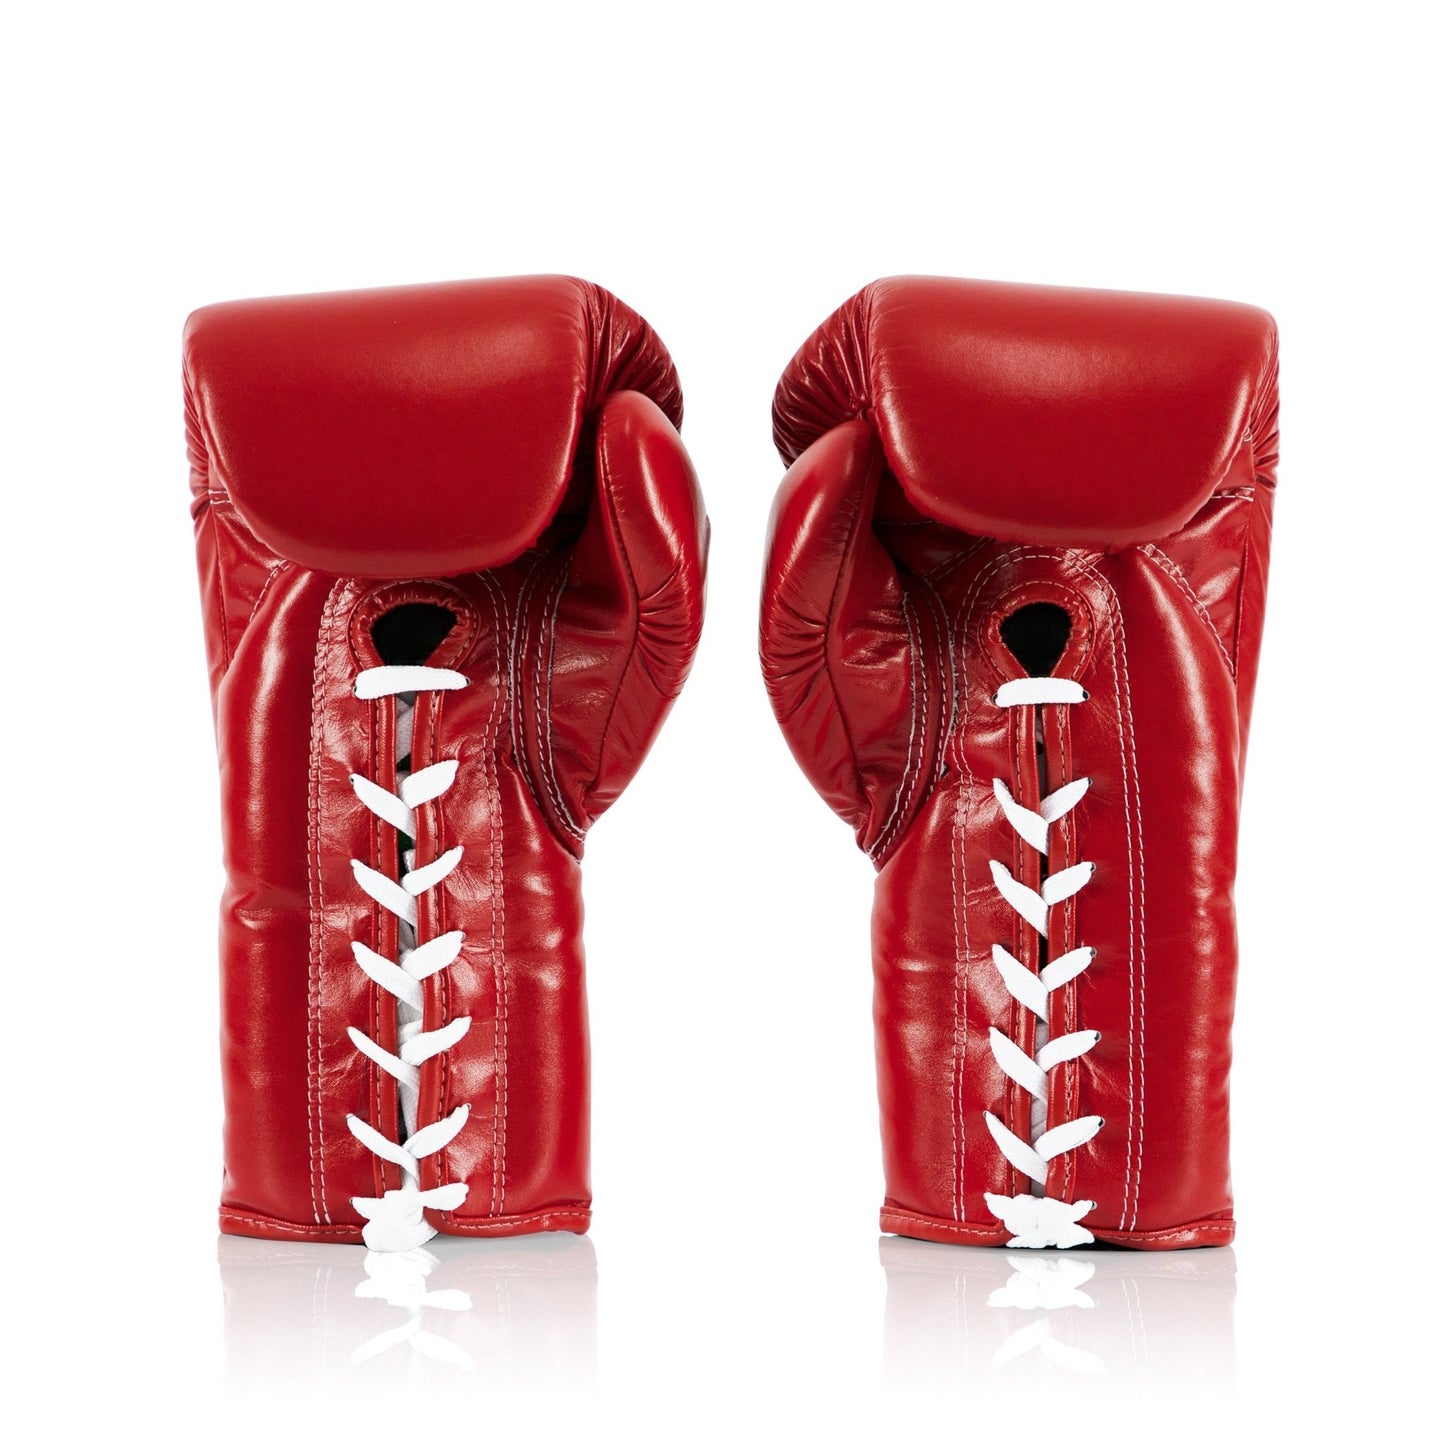 Fairtex Boxing Gloves PRO FIGHT BGL6 Red - SUPER EXPORT SHOP